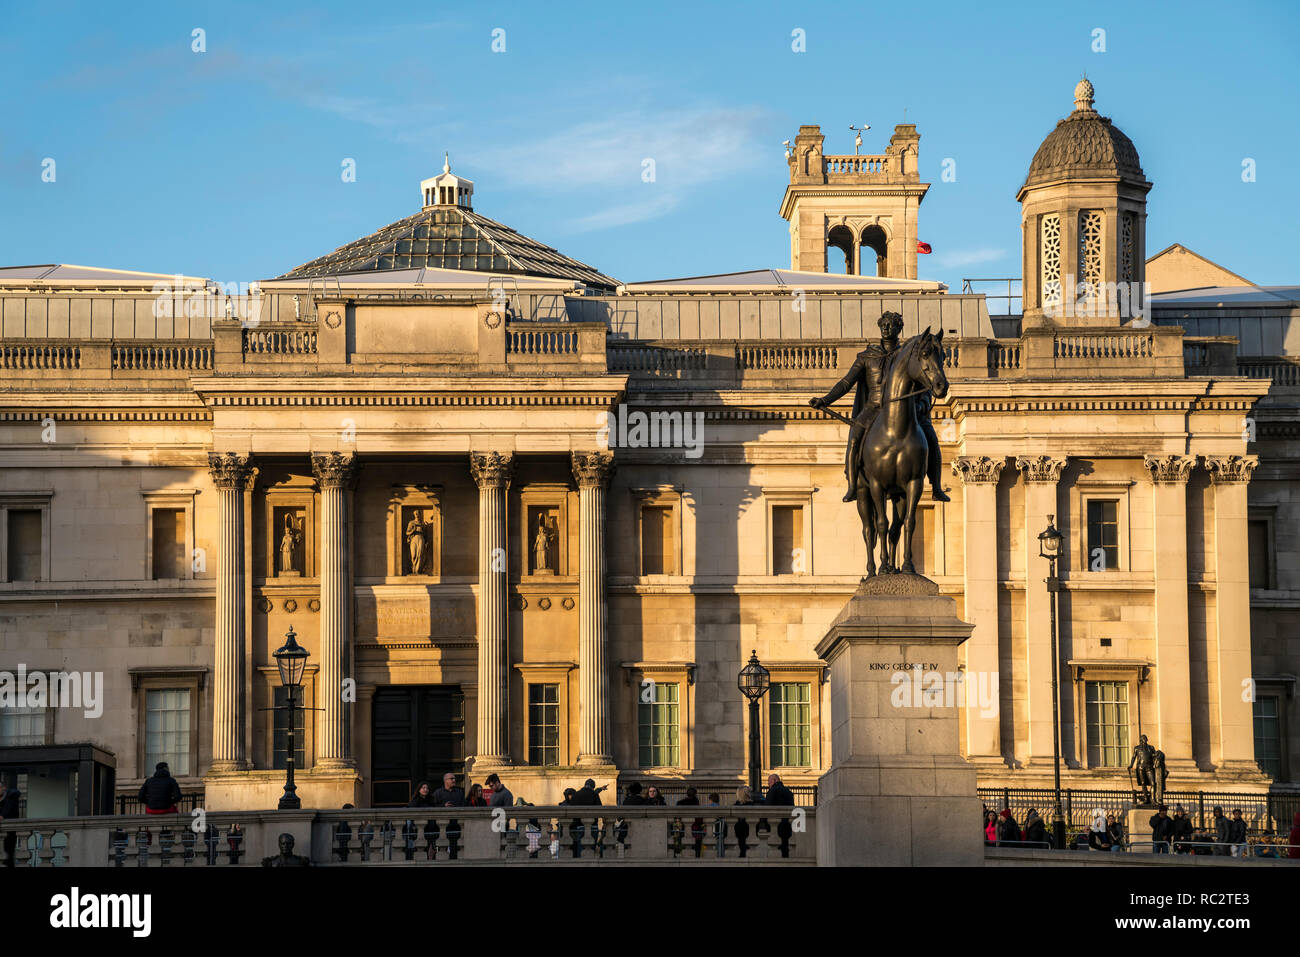 Reiterstandbild von König Georg IV vor der National Gallery, Trafalgar Square, Londres, Frankreich Großbritannien, Europa | Statue de Ki Banque D'Images